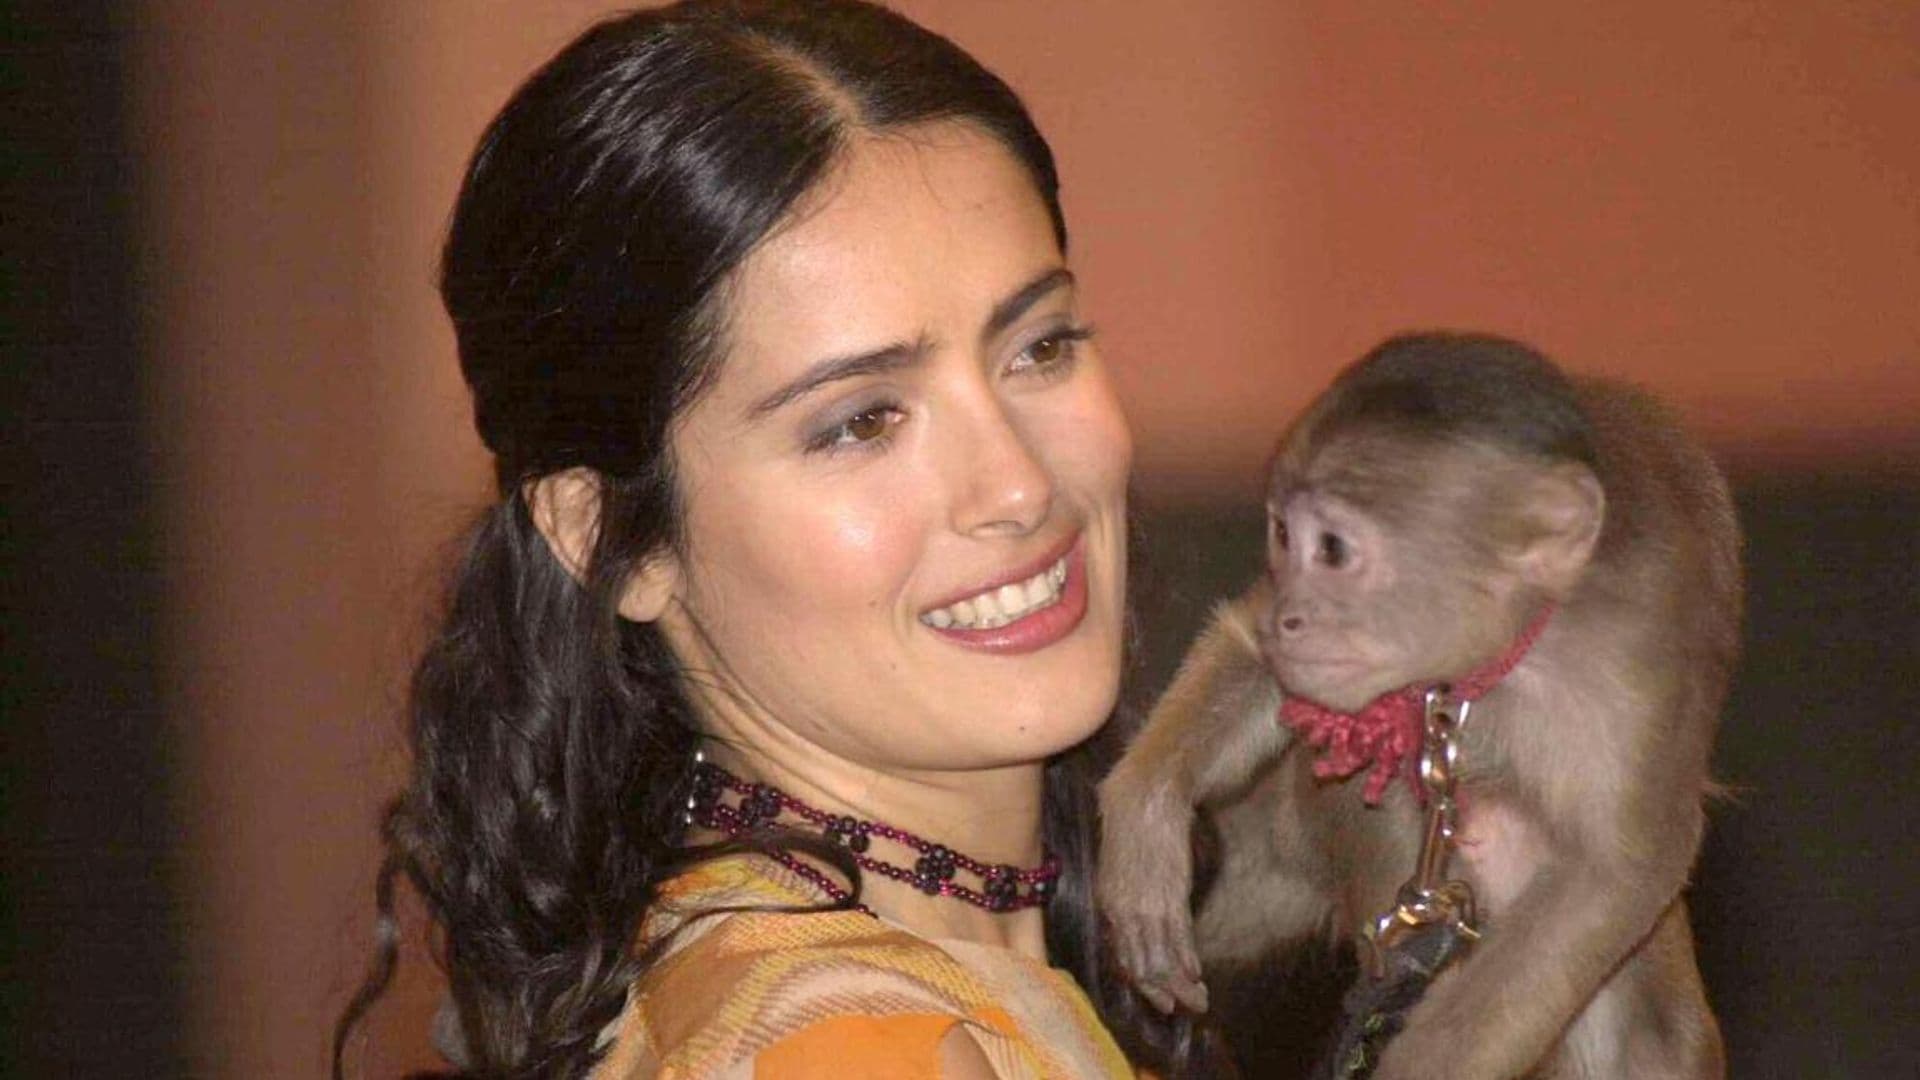 Salma Hayek ‘severely injured’ by monkey on movie set